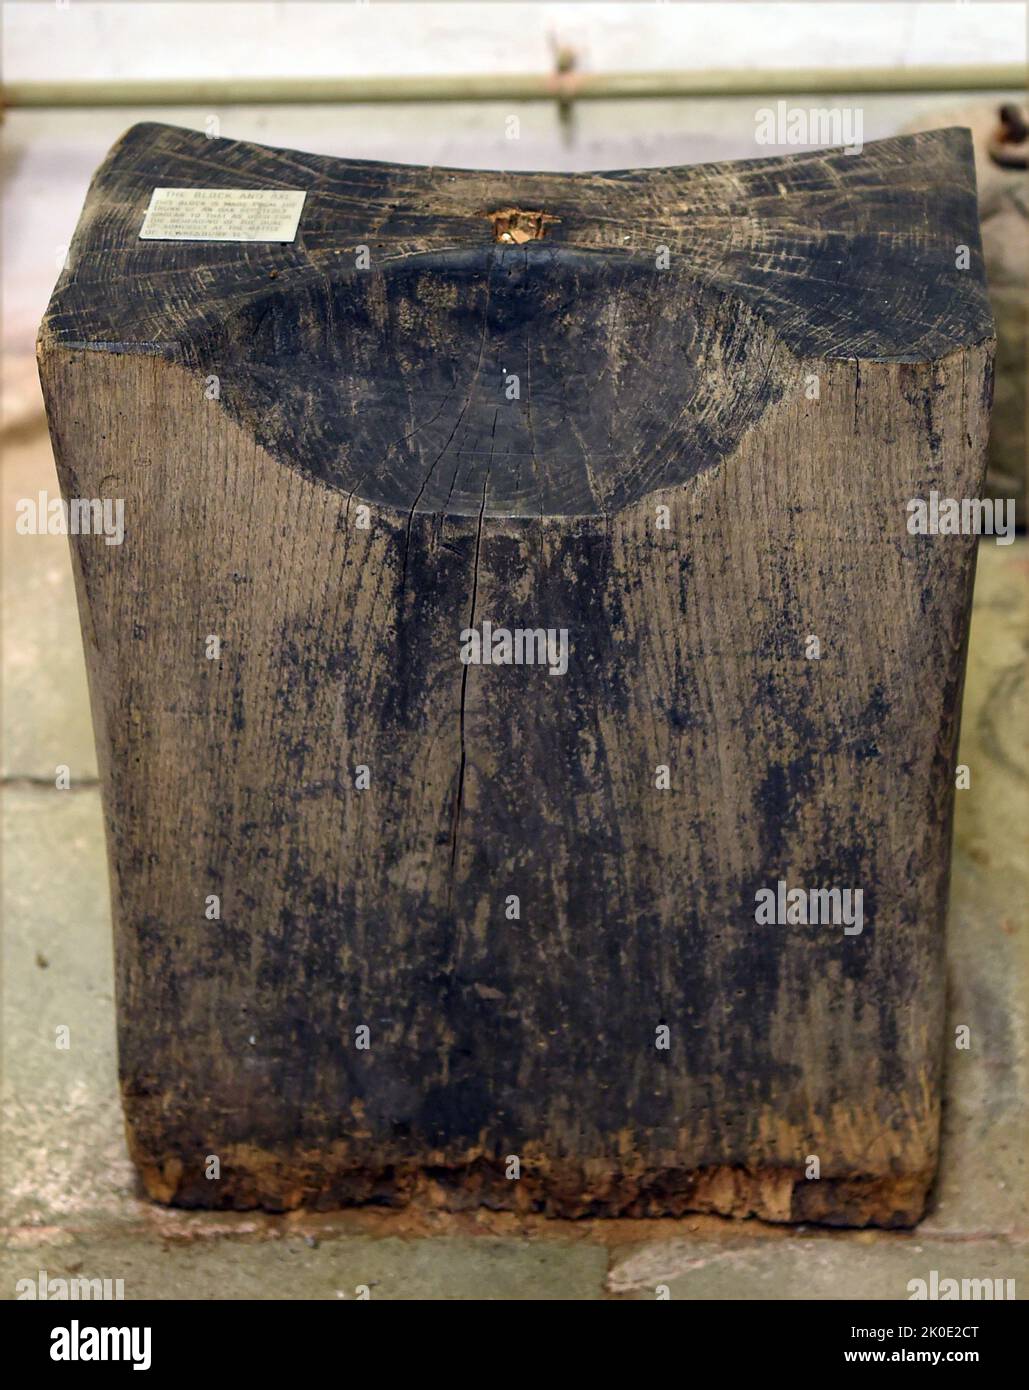 Un blocco di esecuzione pubblica inglese del 15th ° secolo utilizzato per decapitare i prigionieri condannati. Si trattava di una forma di pena capitale alla quale possono partecipare volontariamente i cittadini. Foto Stock